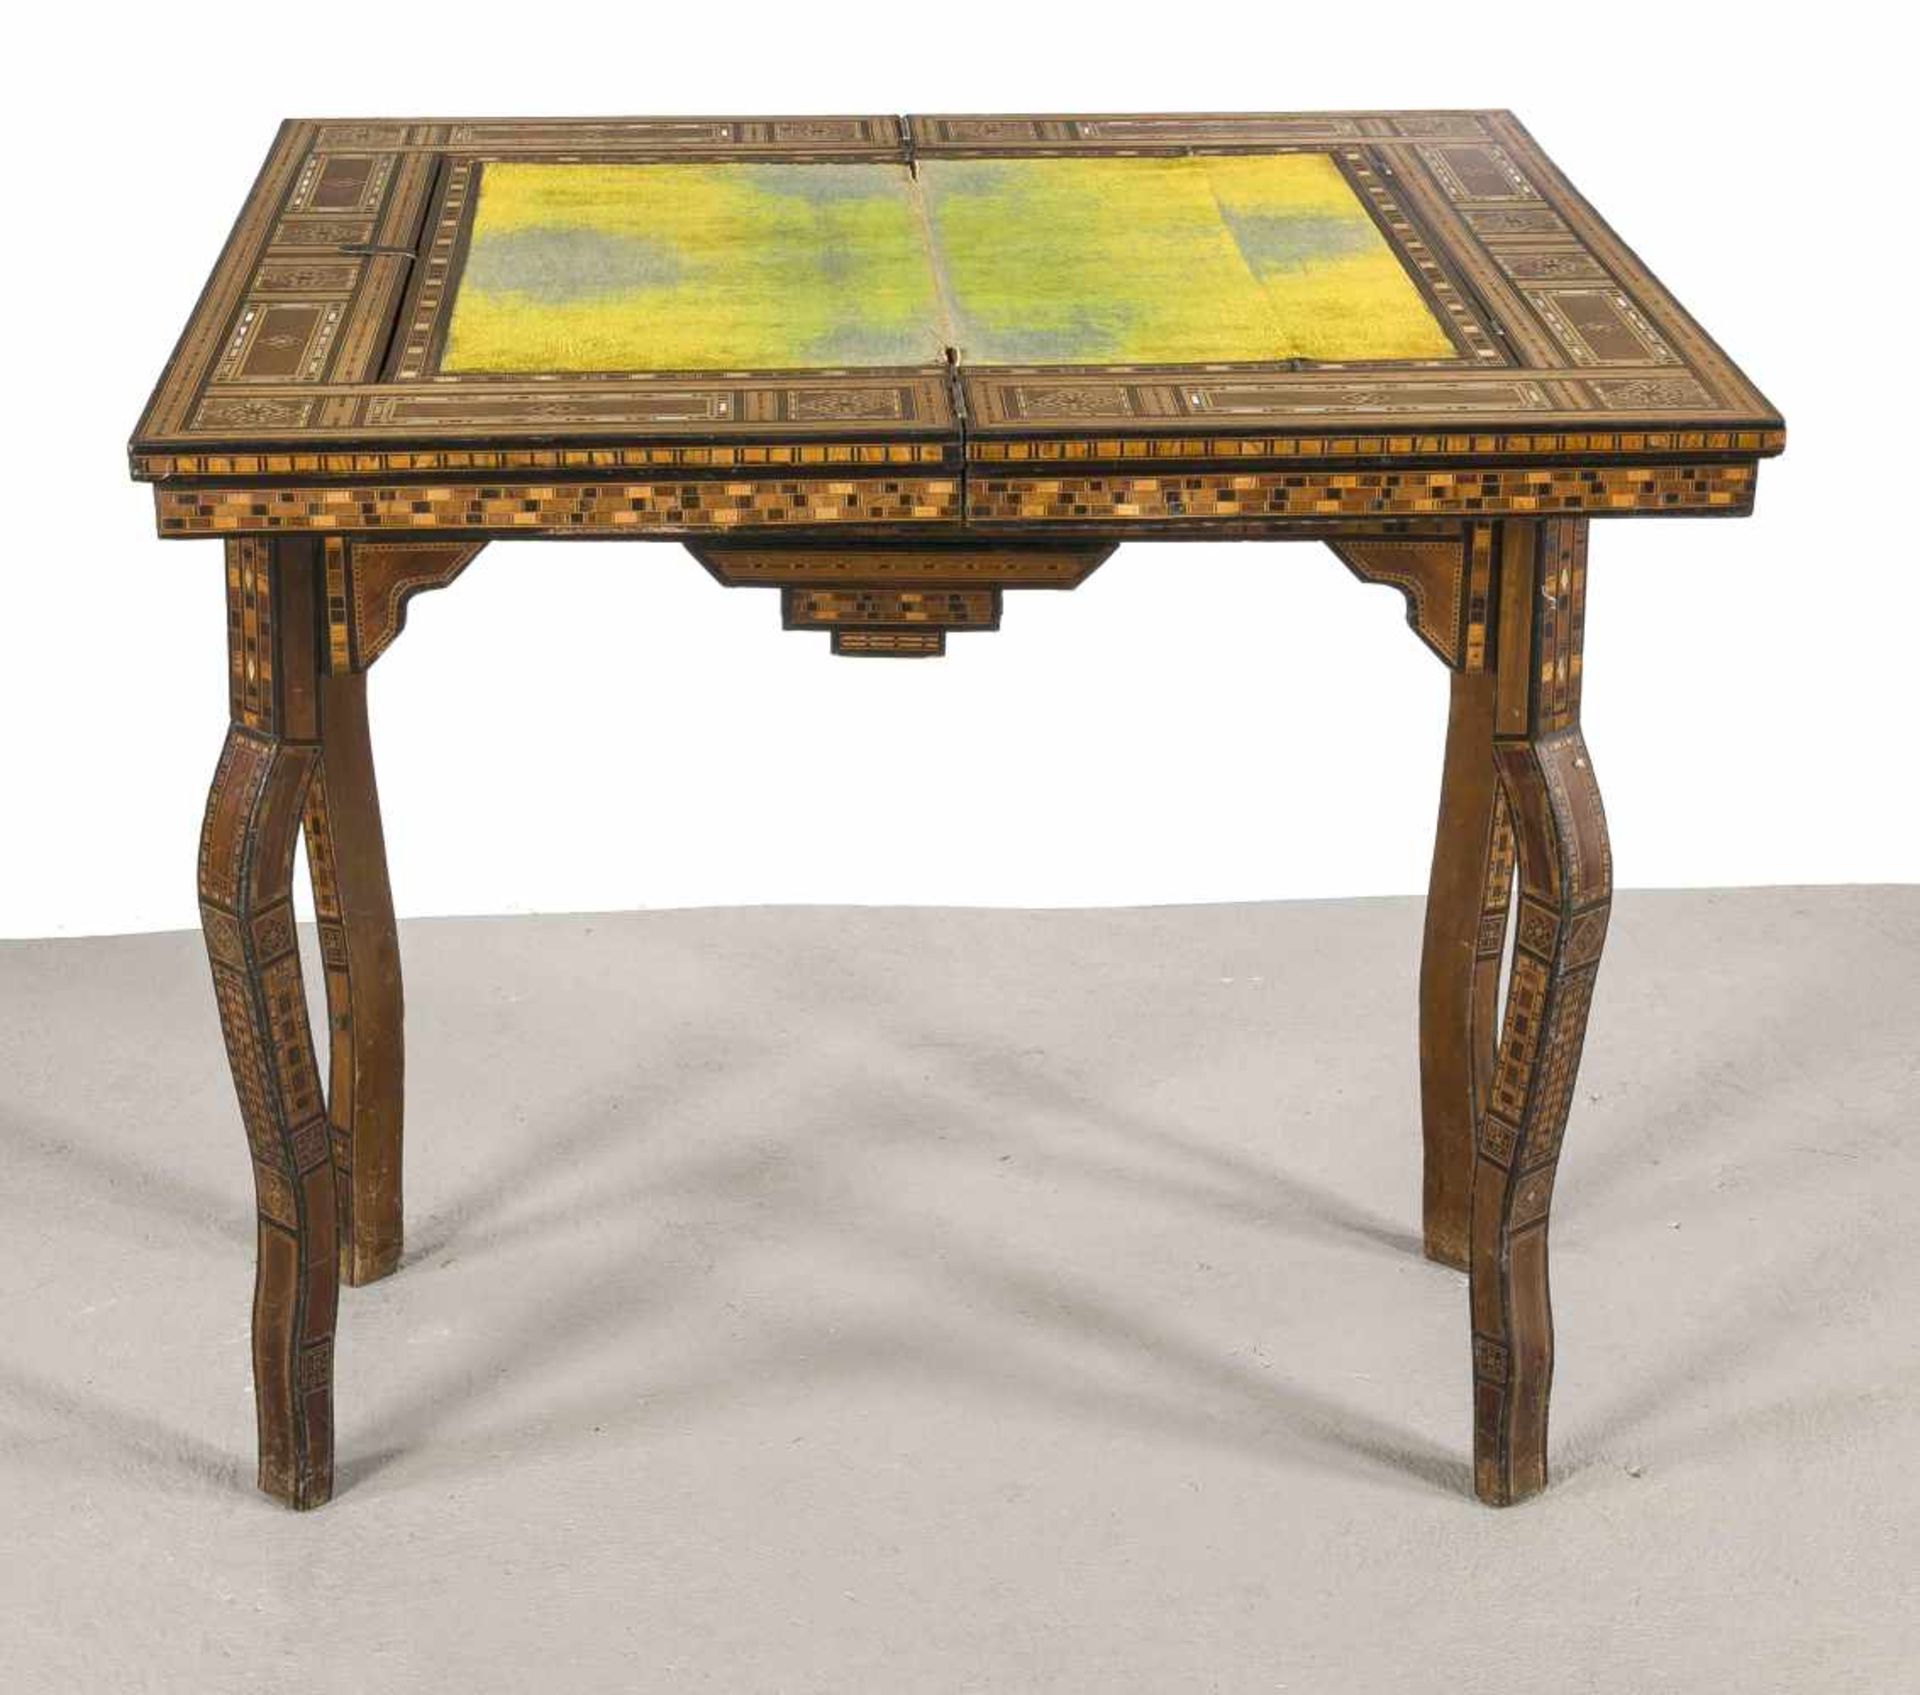 Orientalischer Spieltisch, 19. Jh., Edelholz furniert, teilebonisiert, Perlmutteinlagen, - Bild 2 aus 2